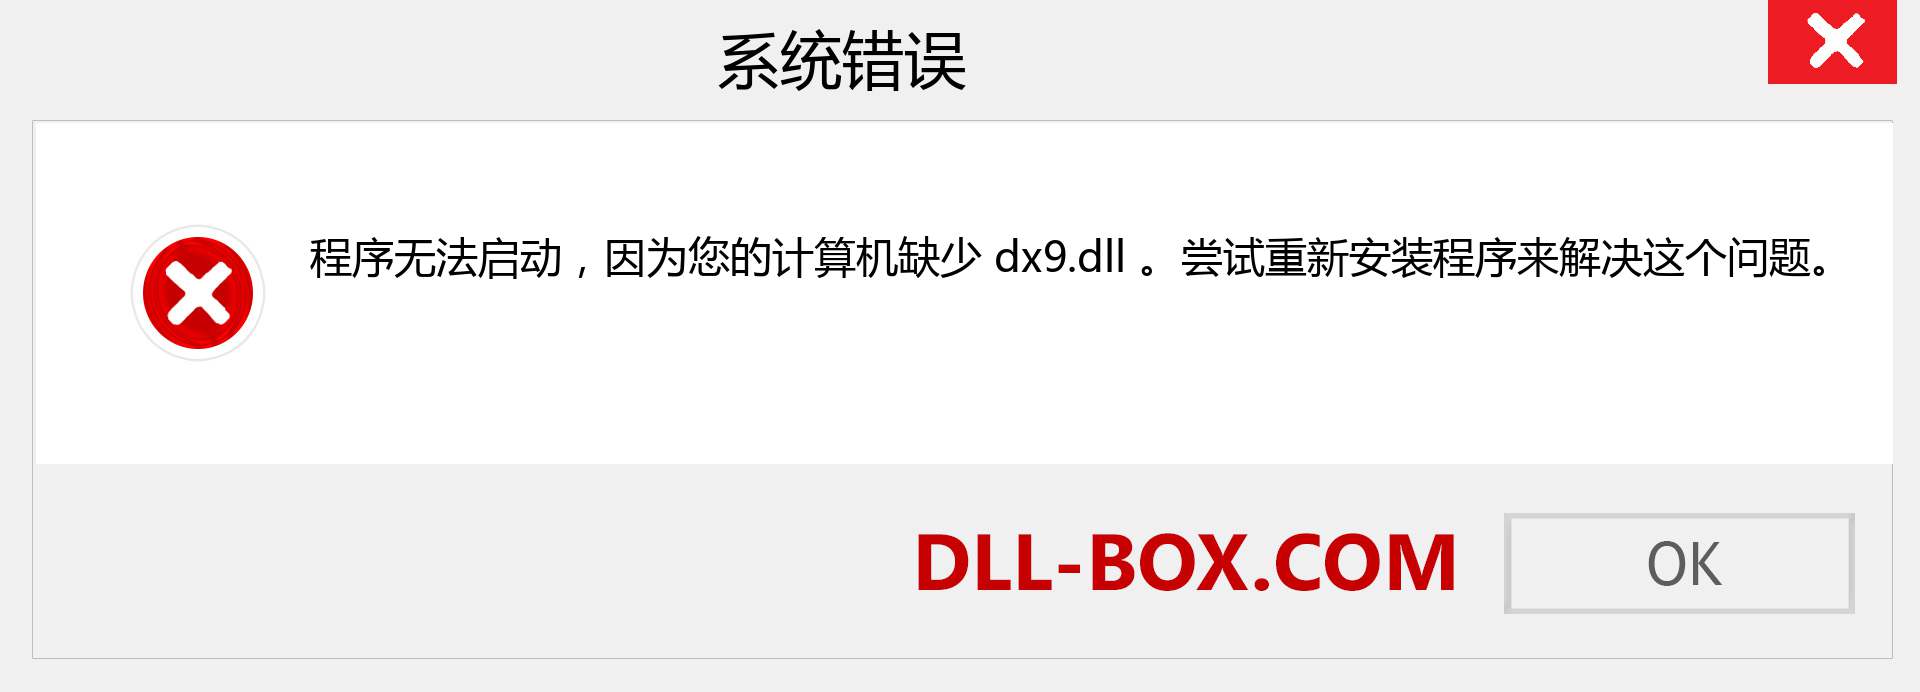 dx9.dll 文件丢失？。 适用于 Windows 7、8、10 的下载 - 修复 Windows、照片、图像上的 dx9 dll 丢失错误